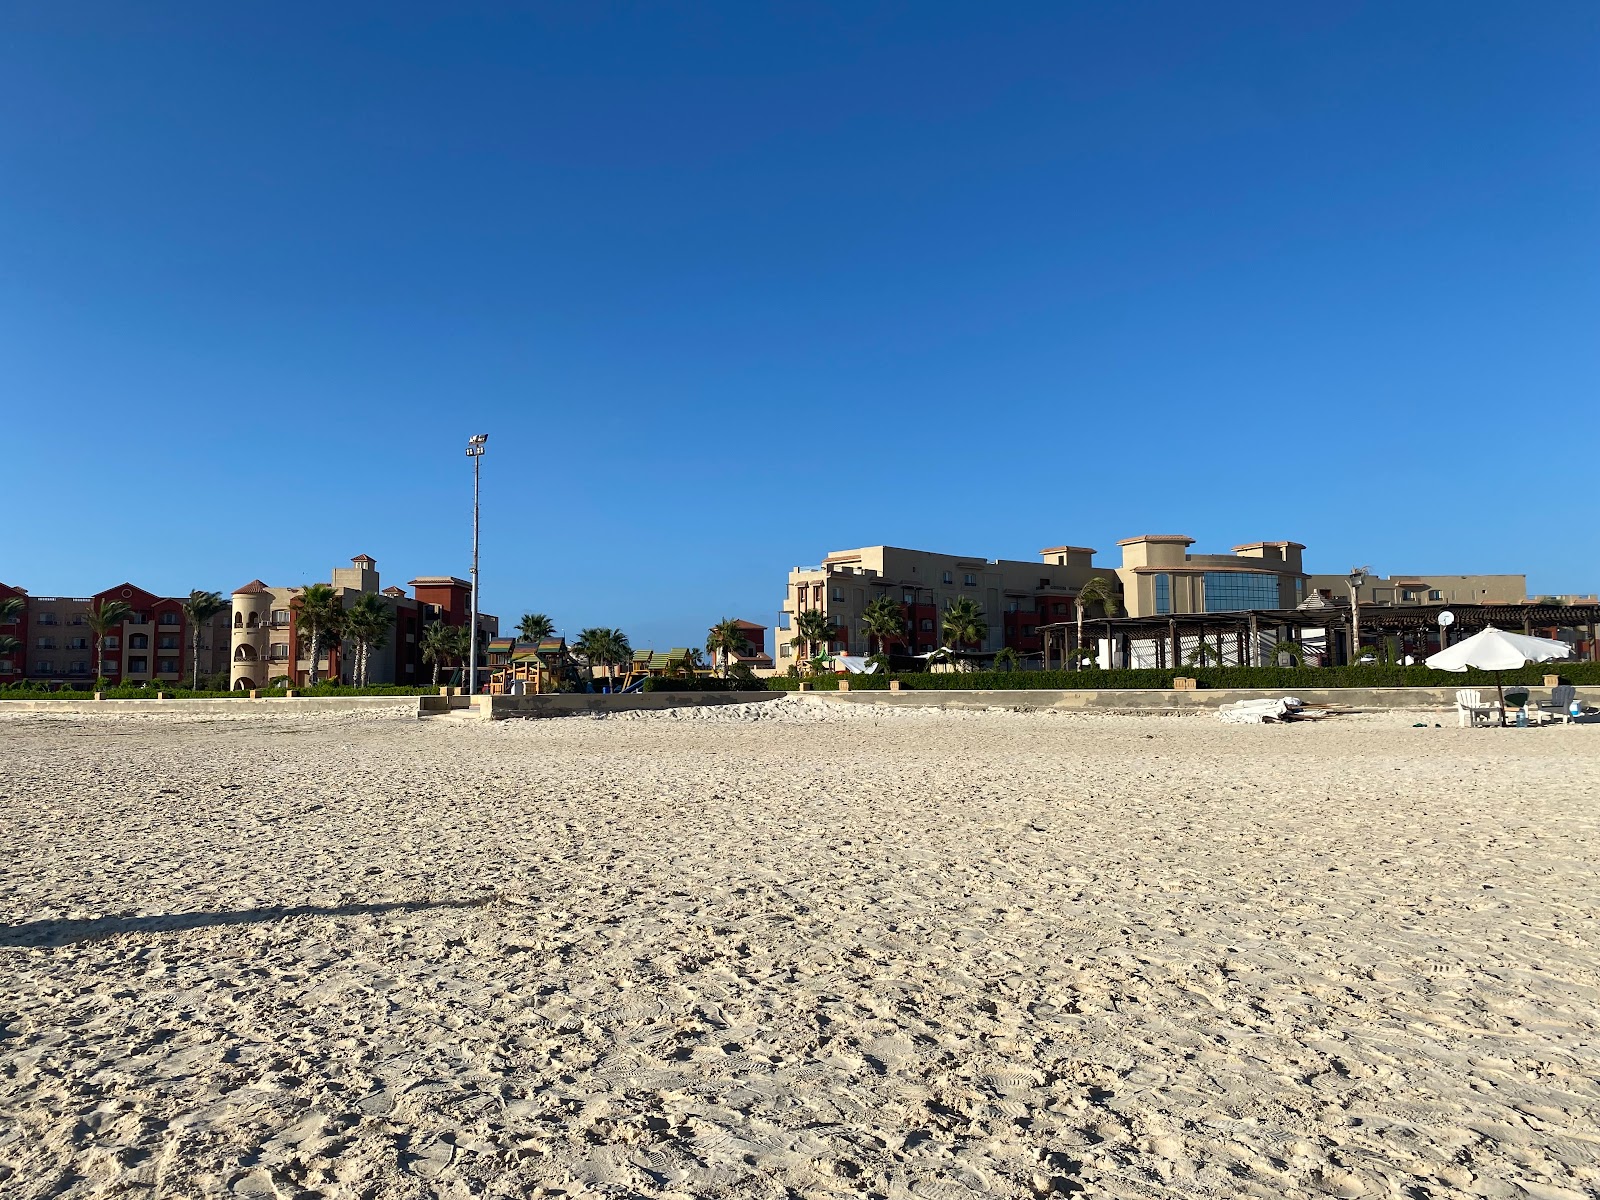 Φωτογραφία του Eagles Resort in Cleopatra Beach - δημοφιλές μέρος μεταξύ λάτρεις της χαλάρωσης